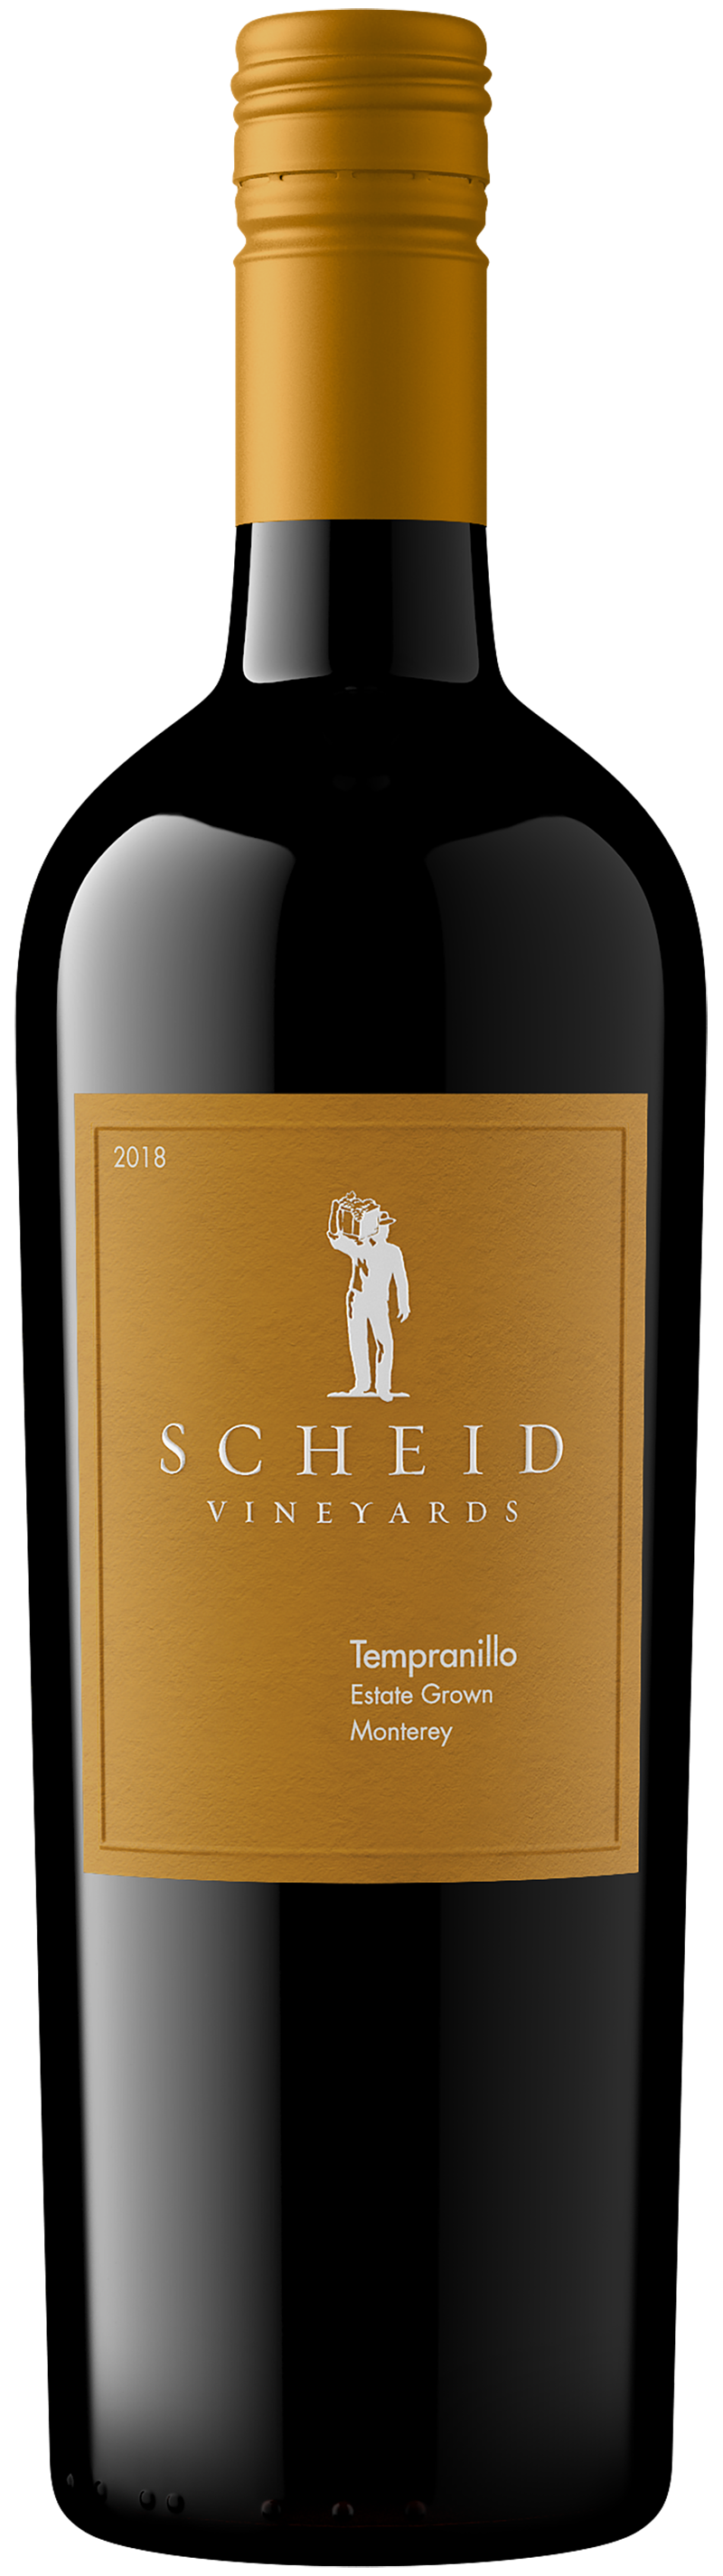 Scheid Vineyards - Products Tempranillo - 2018